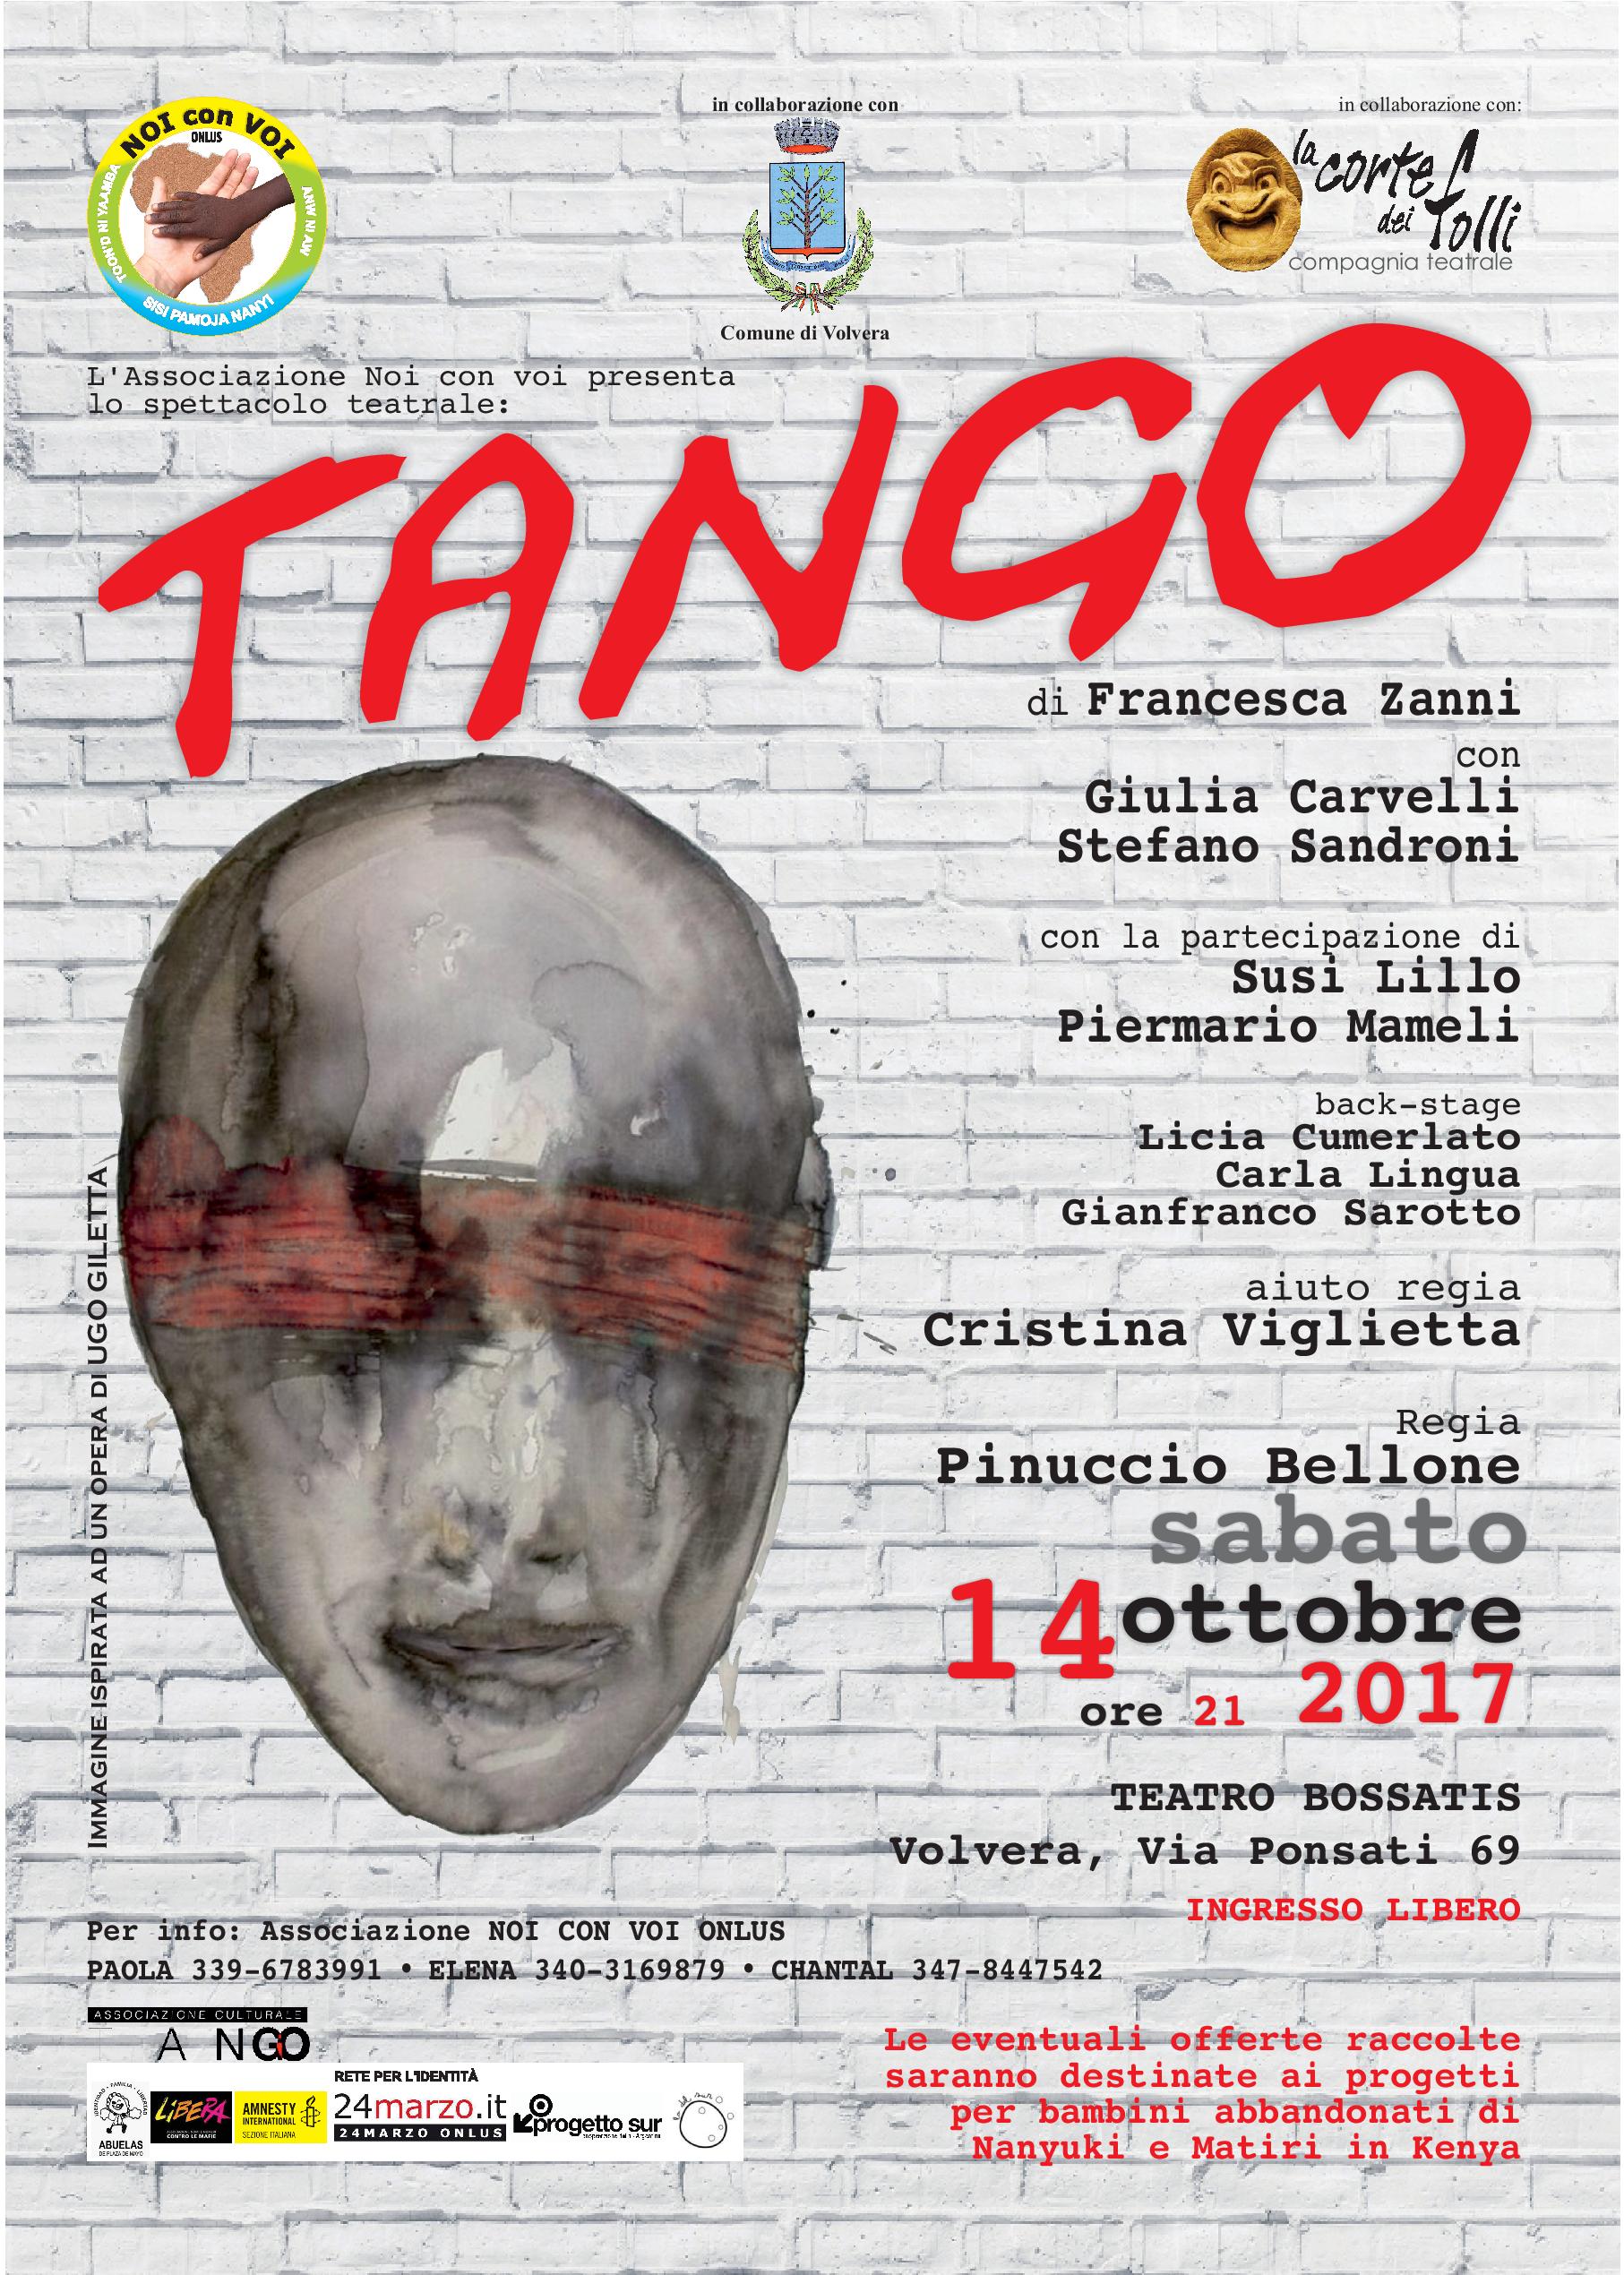 14 ottobre 2017: Spettacolo teatrale "Tango"